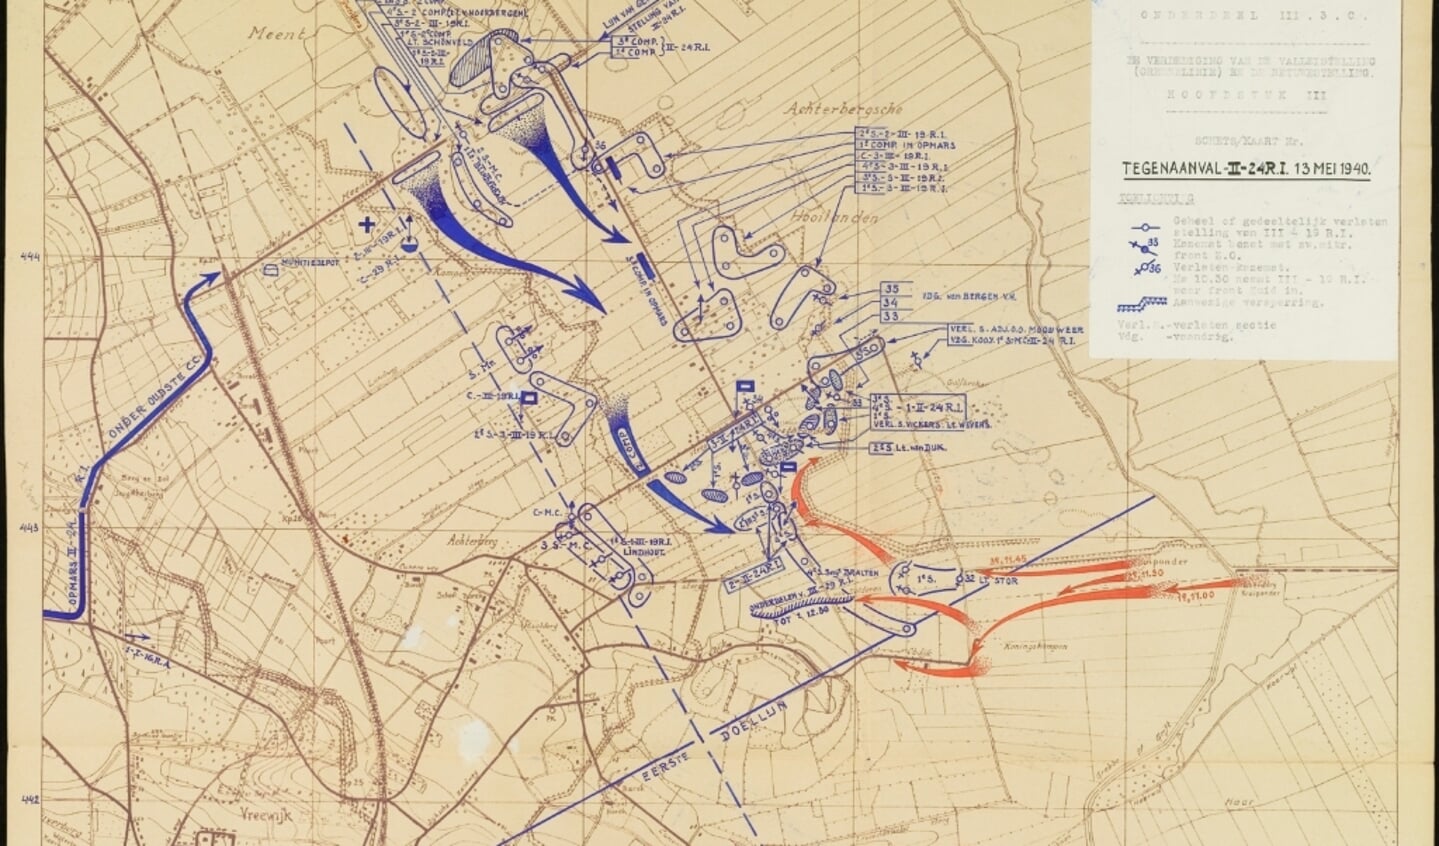 Impressie van de tegenaanval op 13 mei 1940.